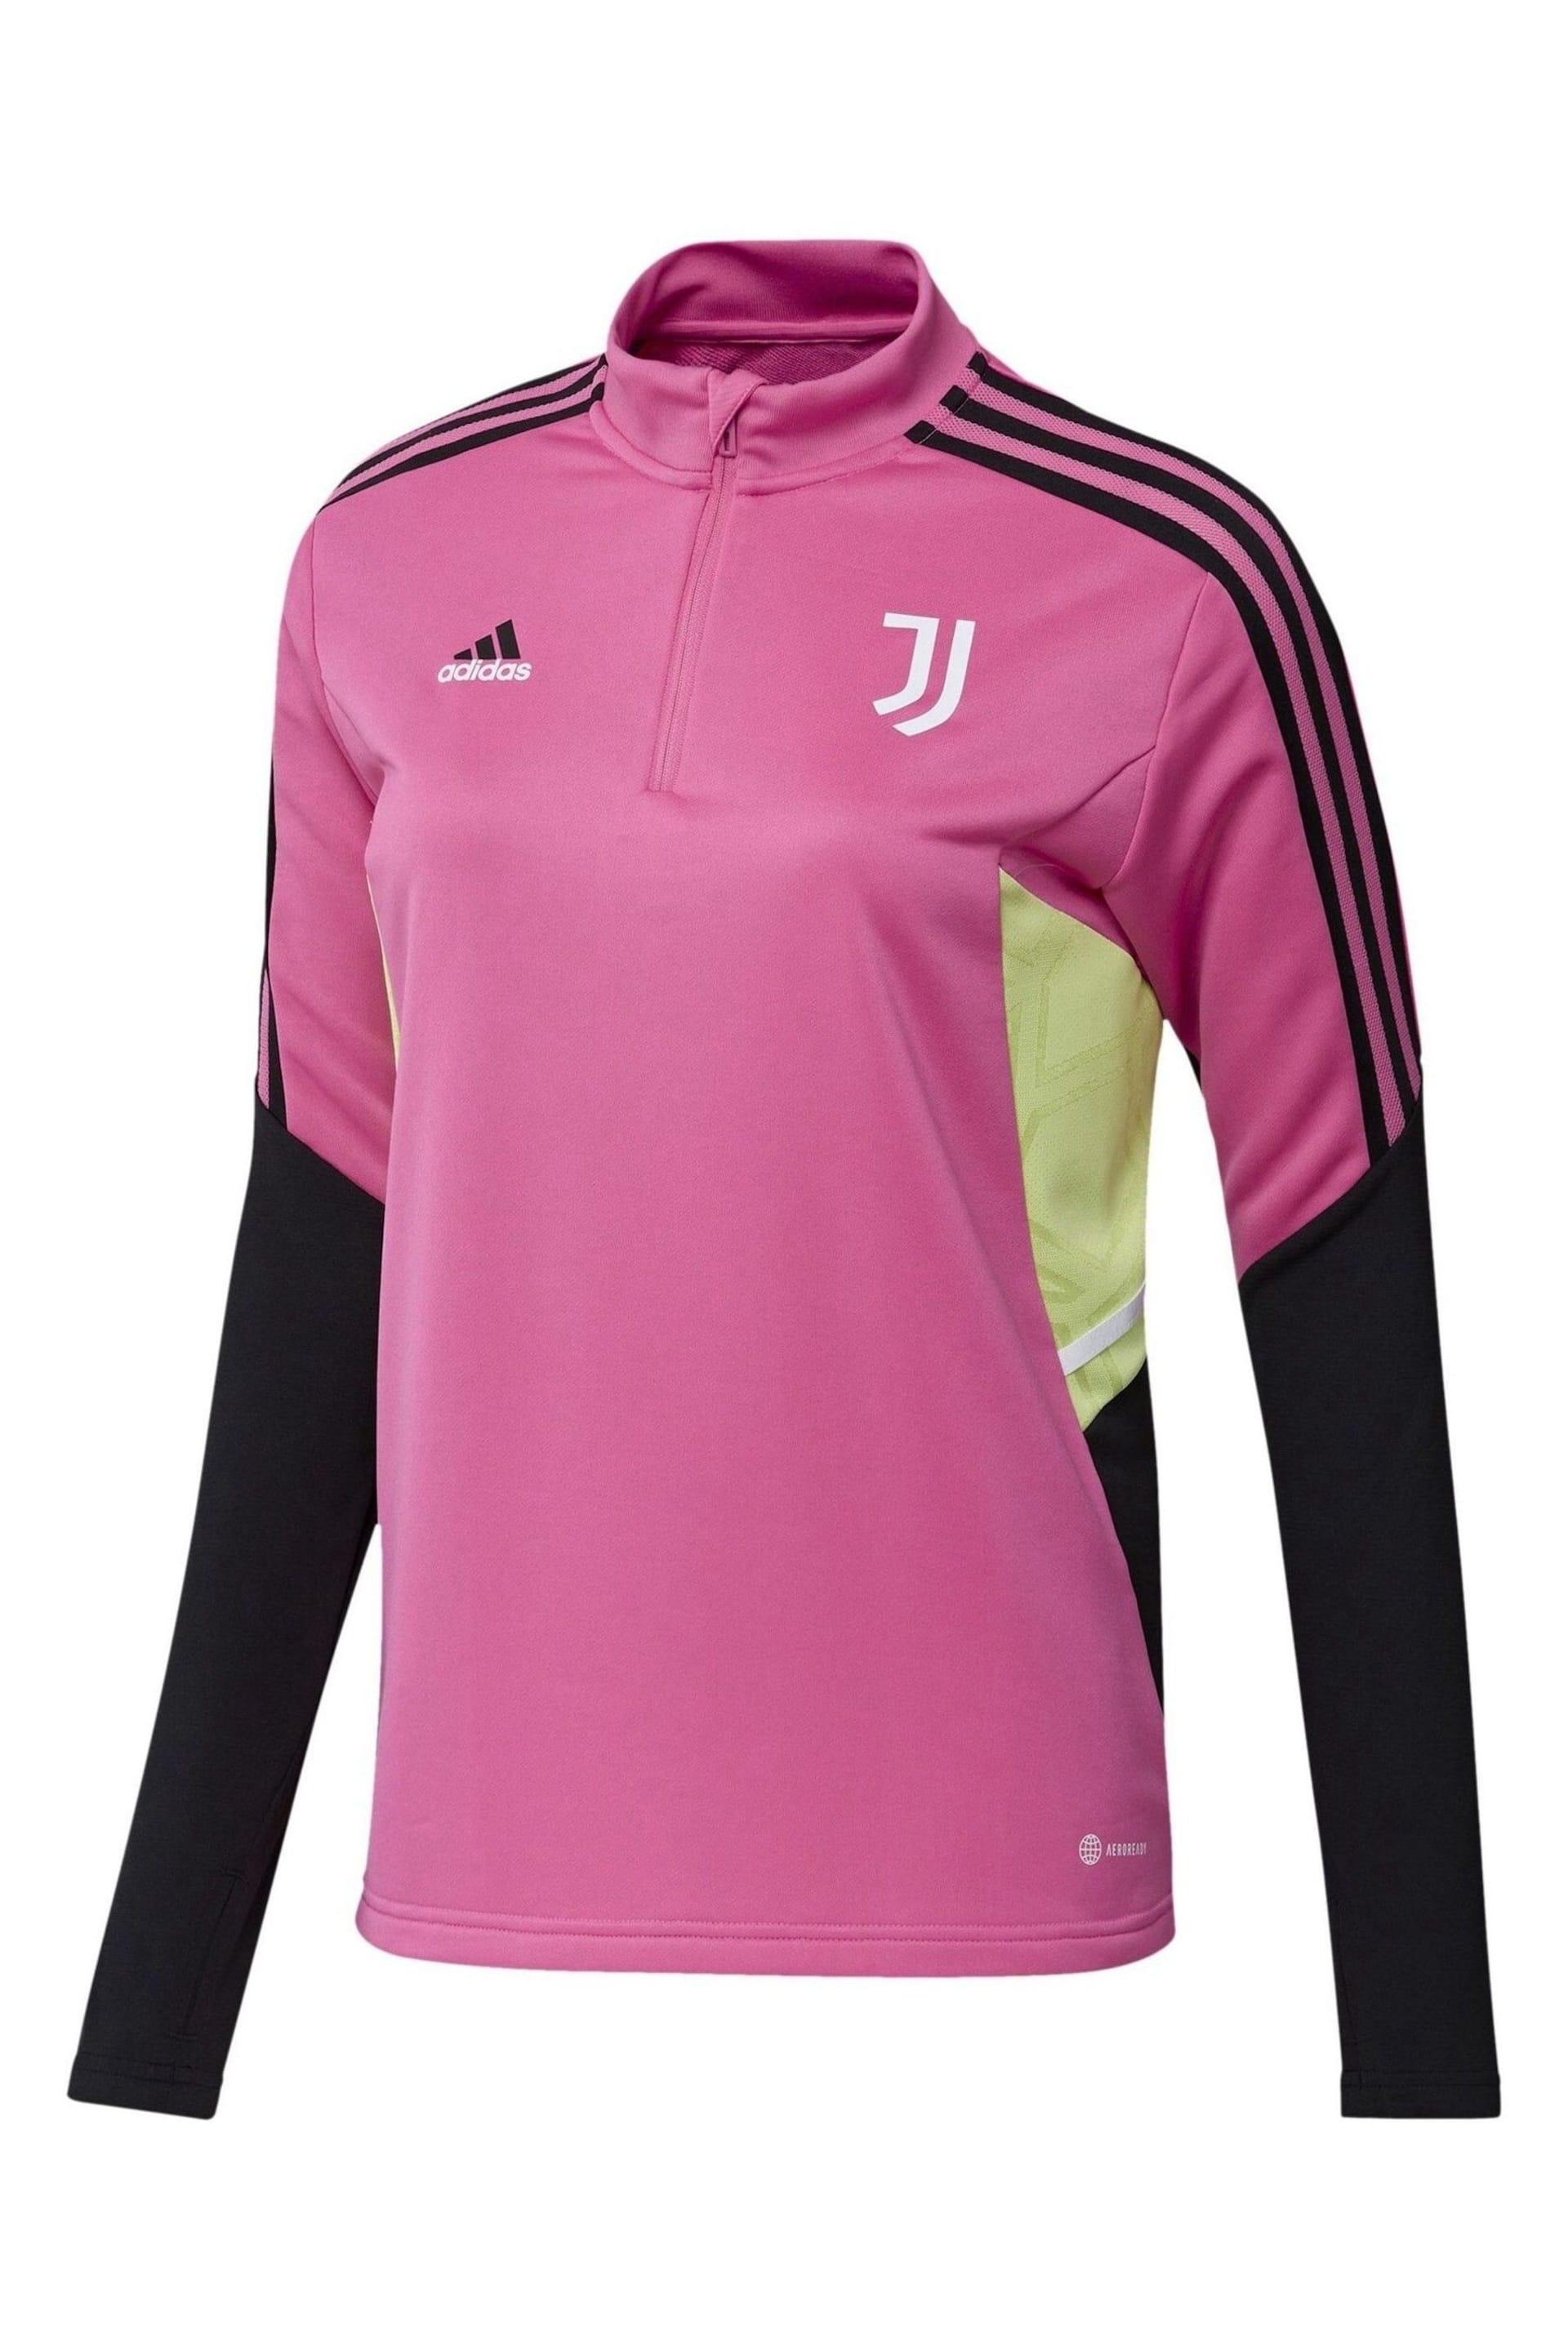 adidas Pink Juventus Training Top Womens - Image 2 of 3